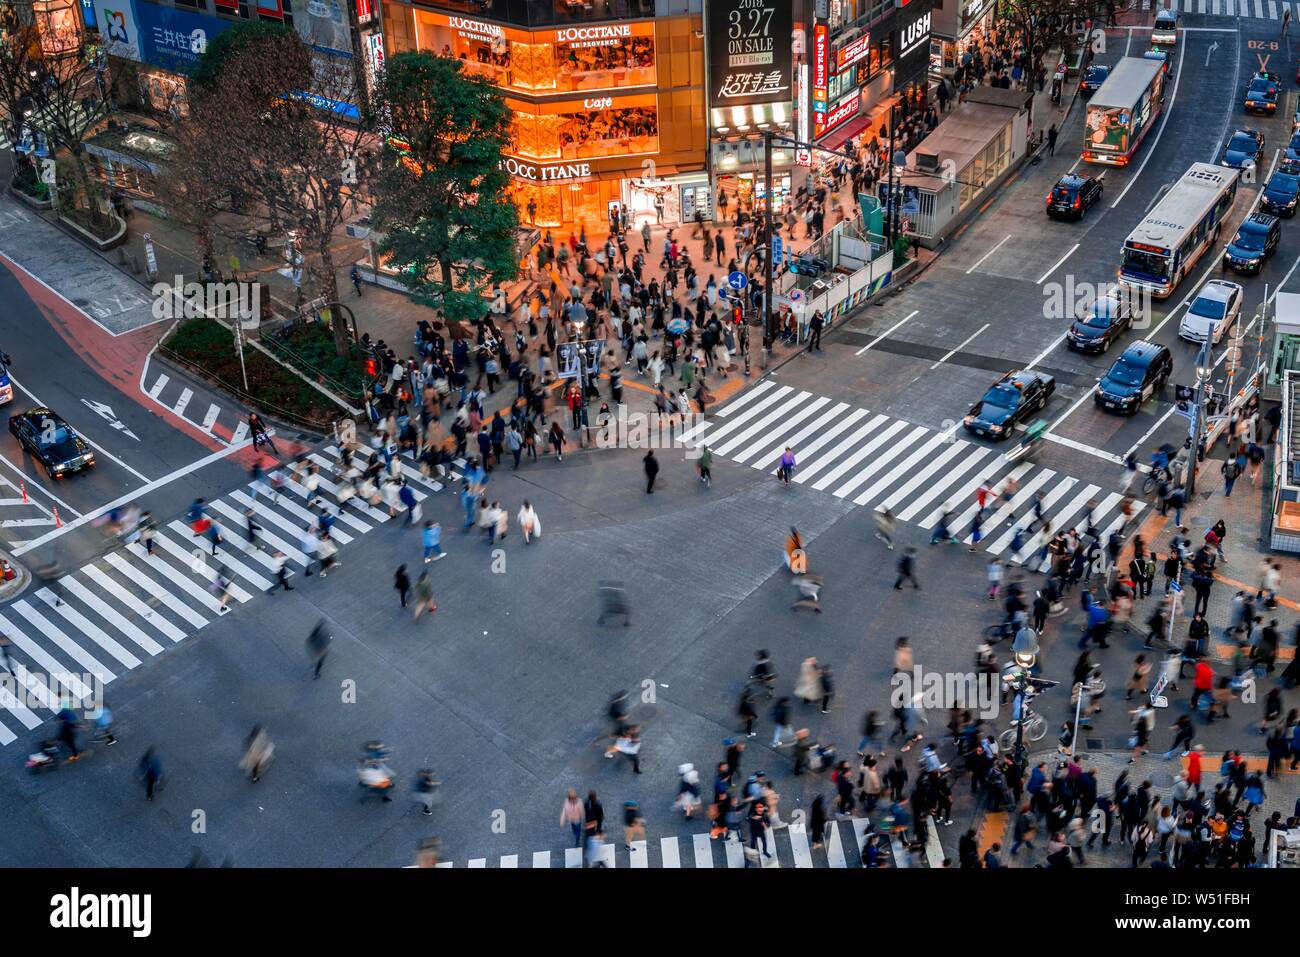 Shibuya Crossing von oben, Massen von Leuten an der Kreuzung mit der Straßenbeleuchtung und farbenfrohe Schilder beleuchtete, beleuchtete Werbung in der Stockfoto